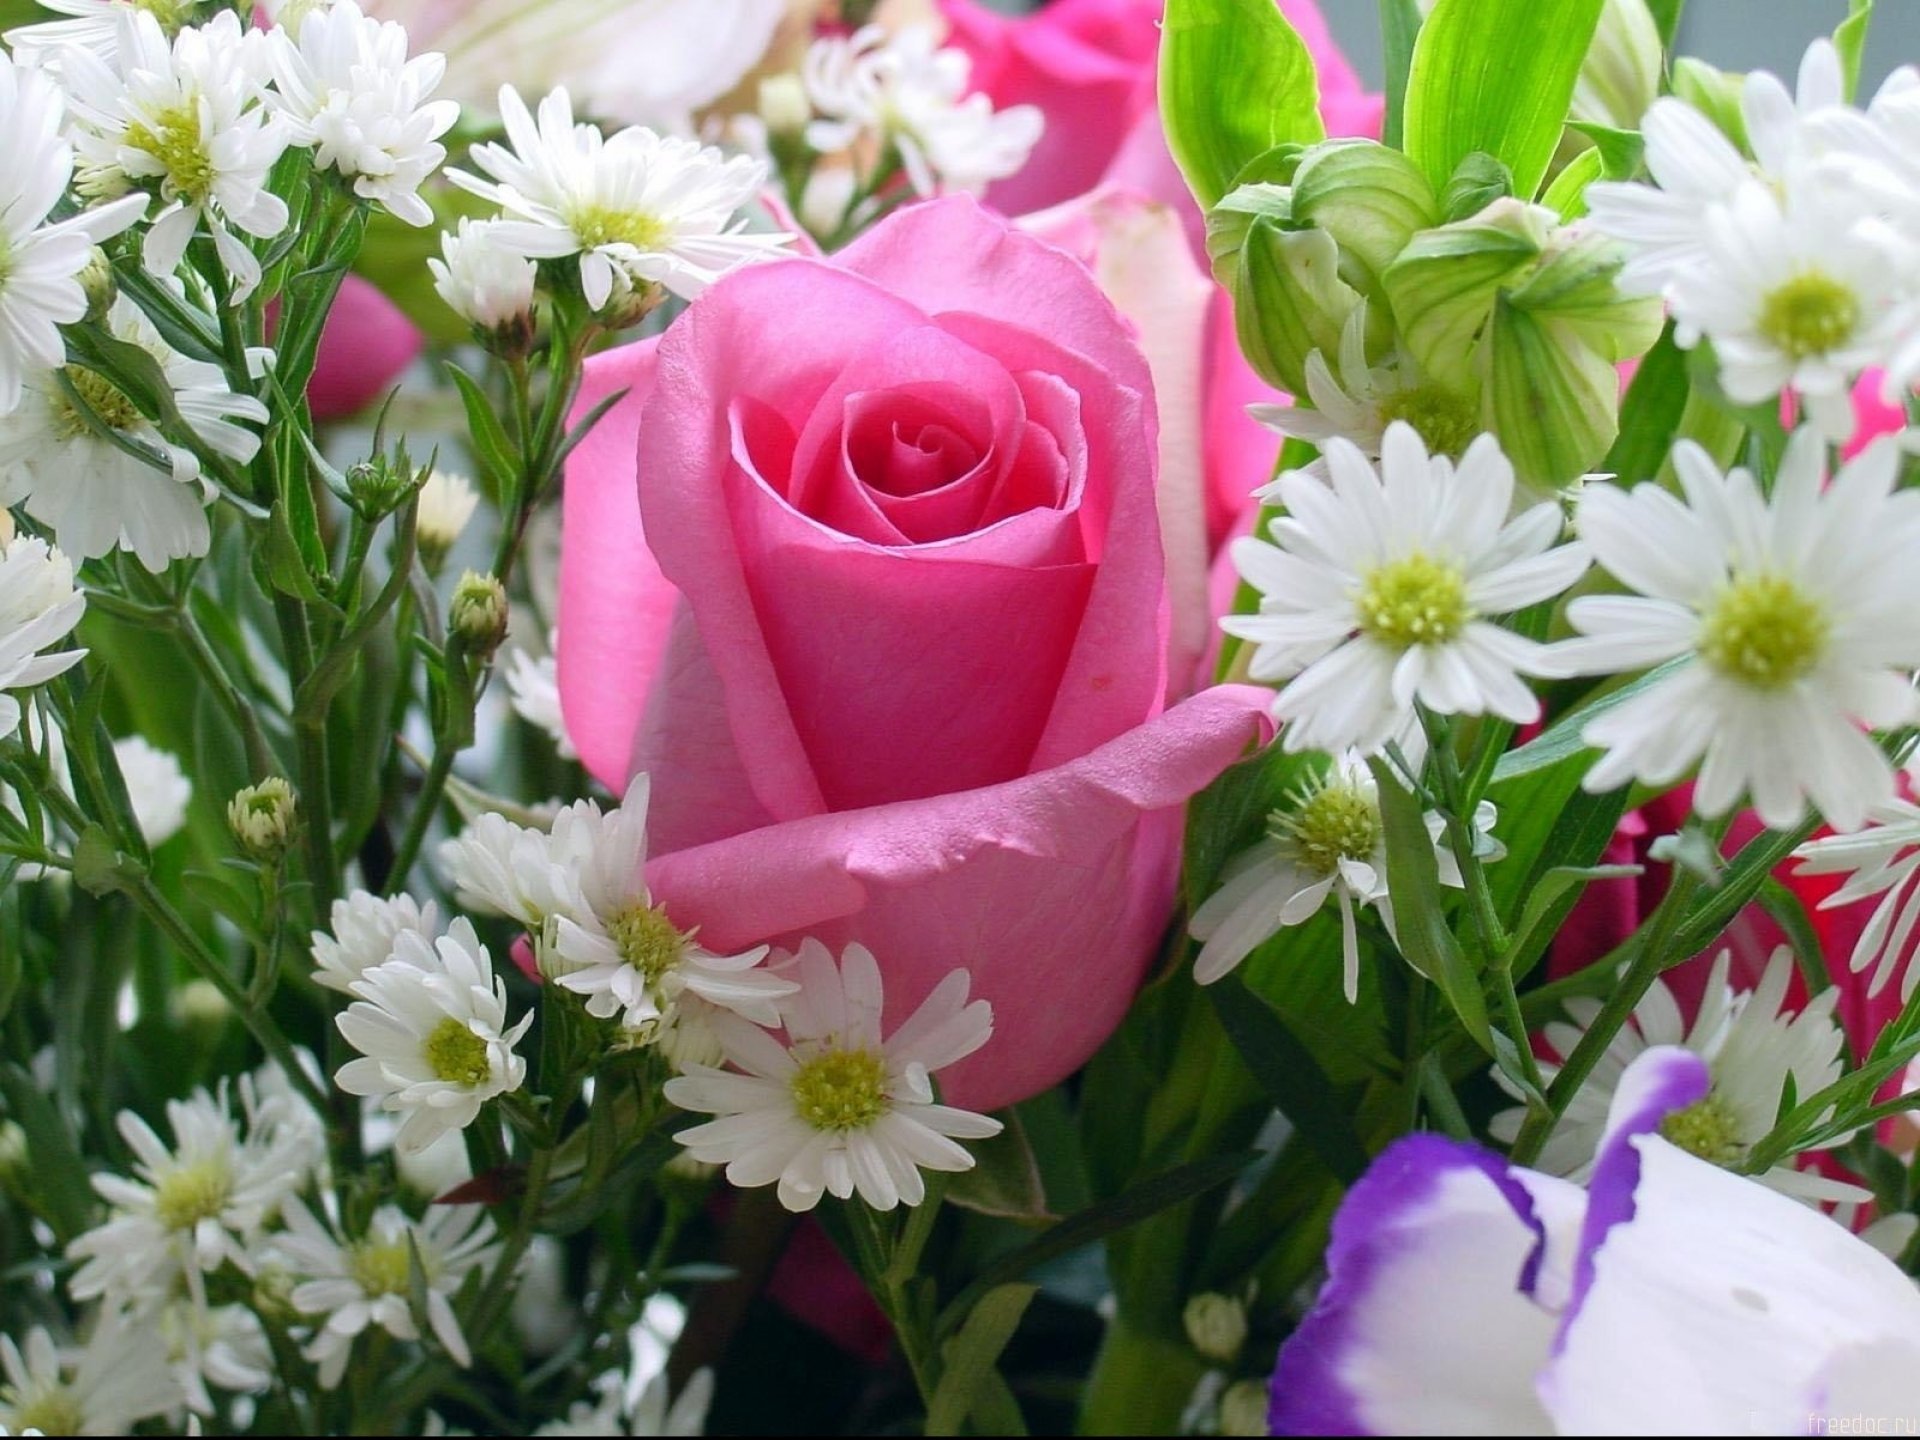 Открытки с цветами без надписей | Открытки, Цветы, Букет из розовых роз